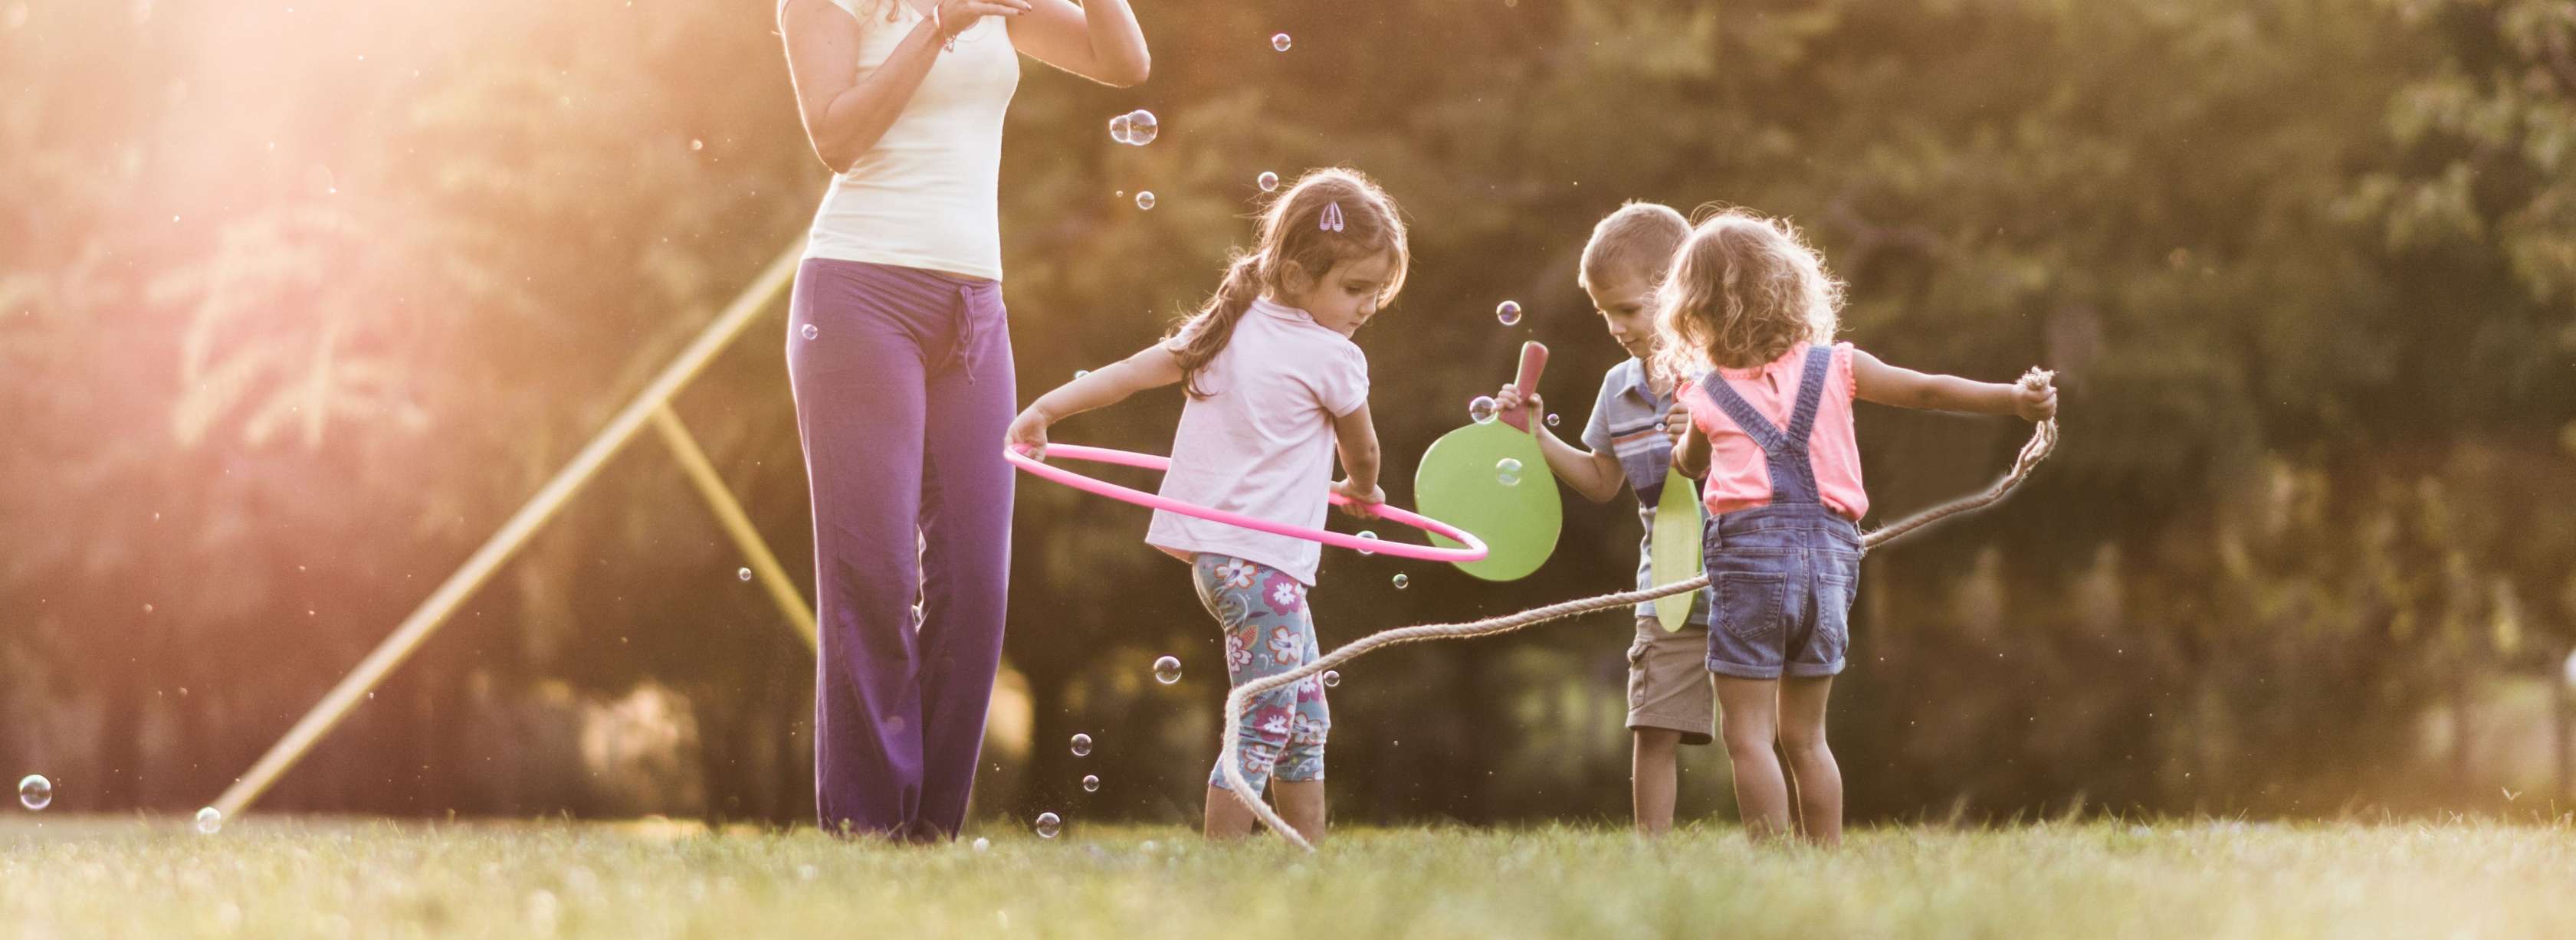 Eine junge Kindergärtnerin steht mit drei spielenden Kindern im Garten und bläst Seifenblasen.